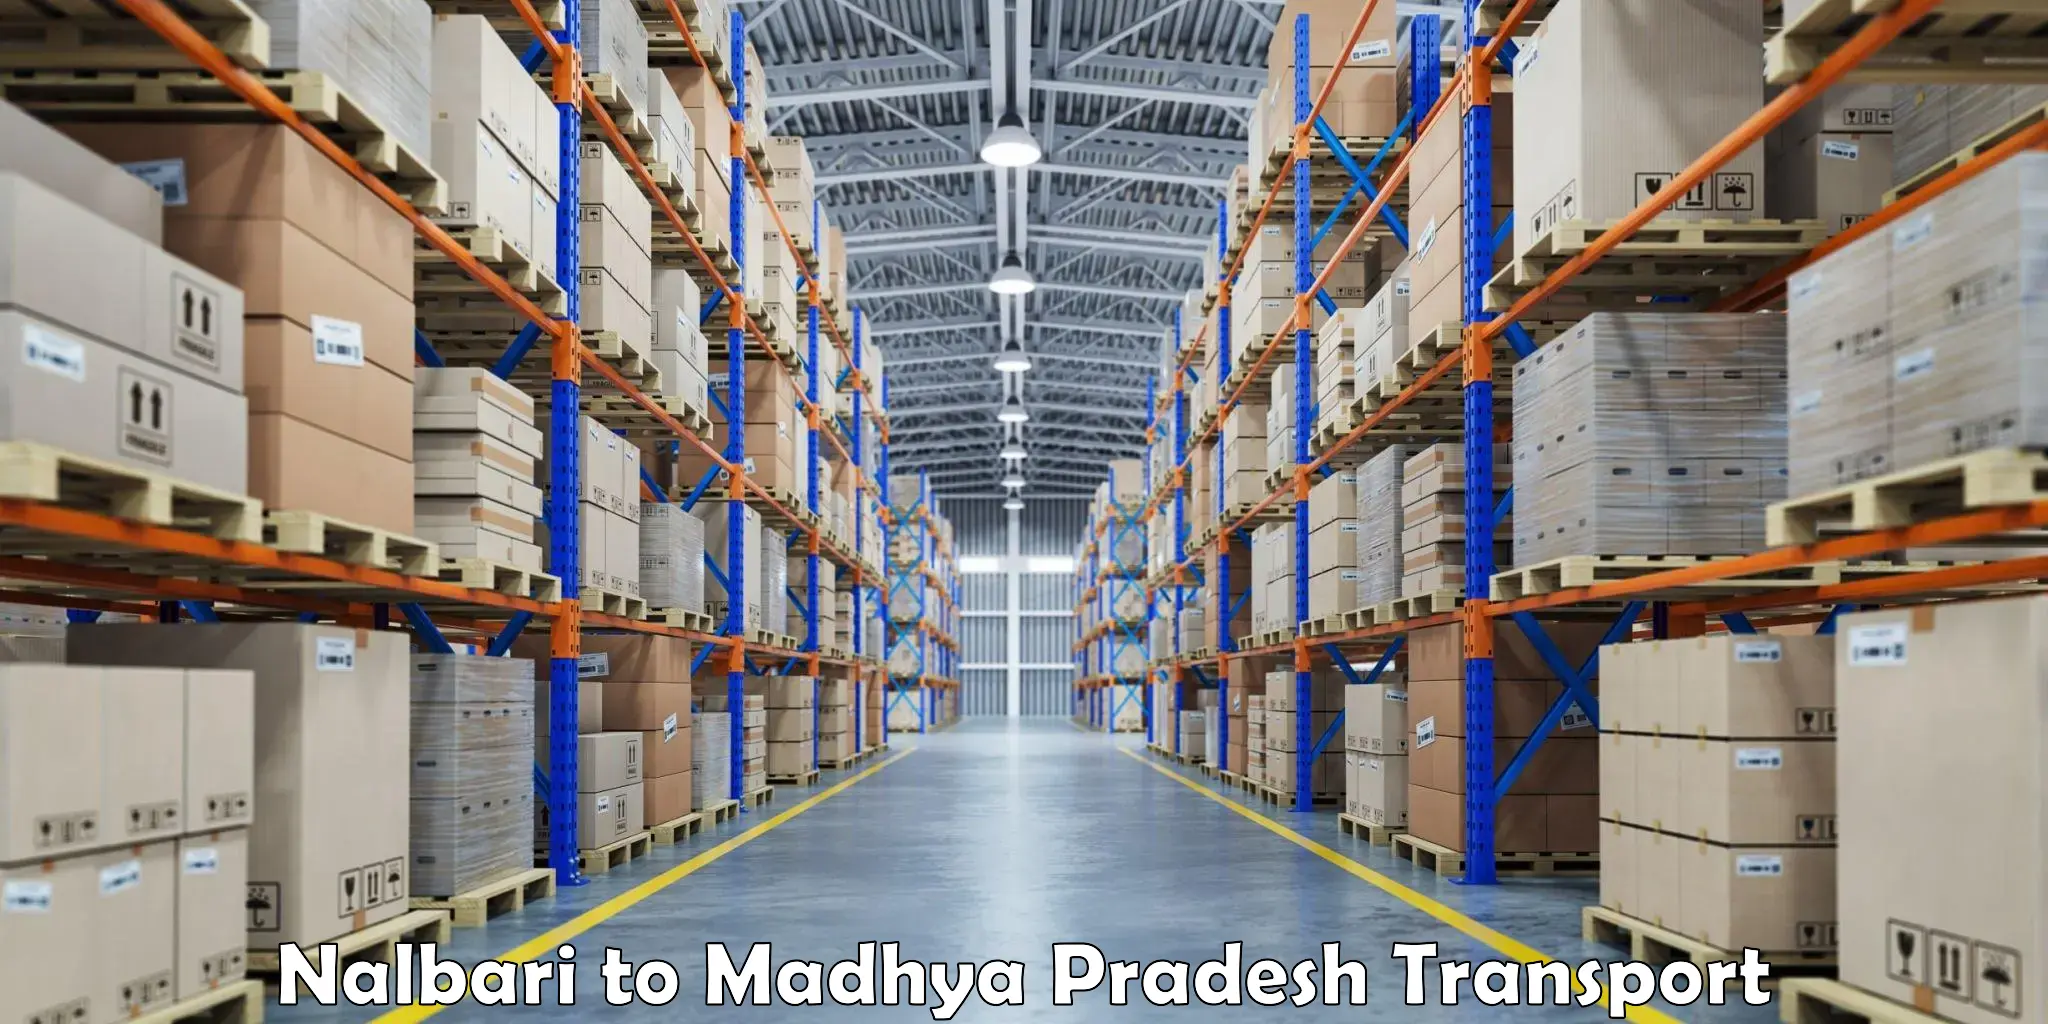 Truck transport companies in India Nalbari to Hatta